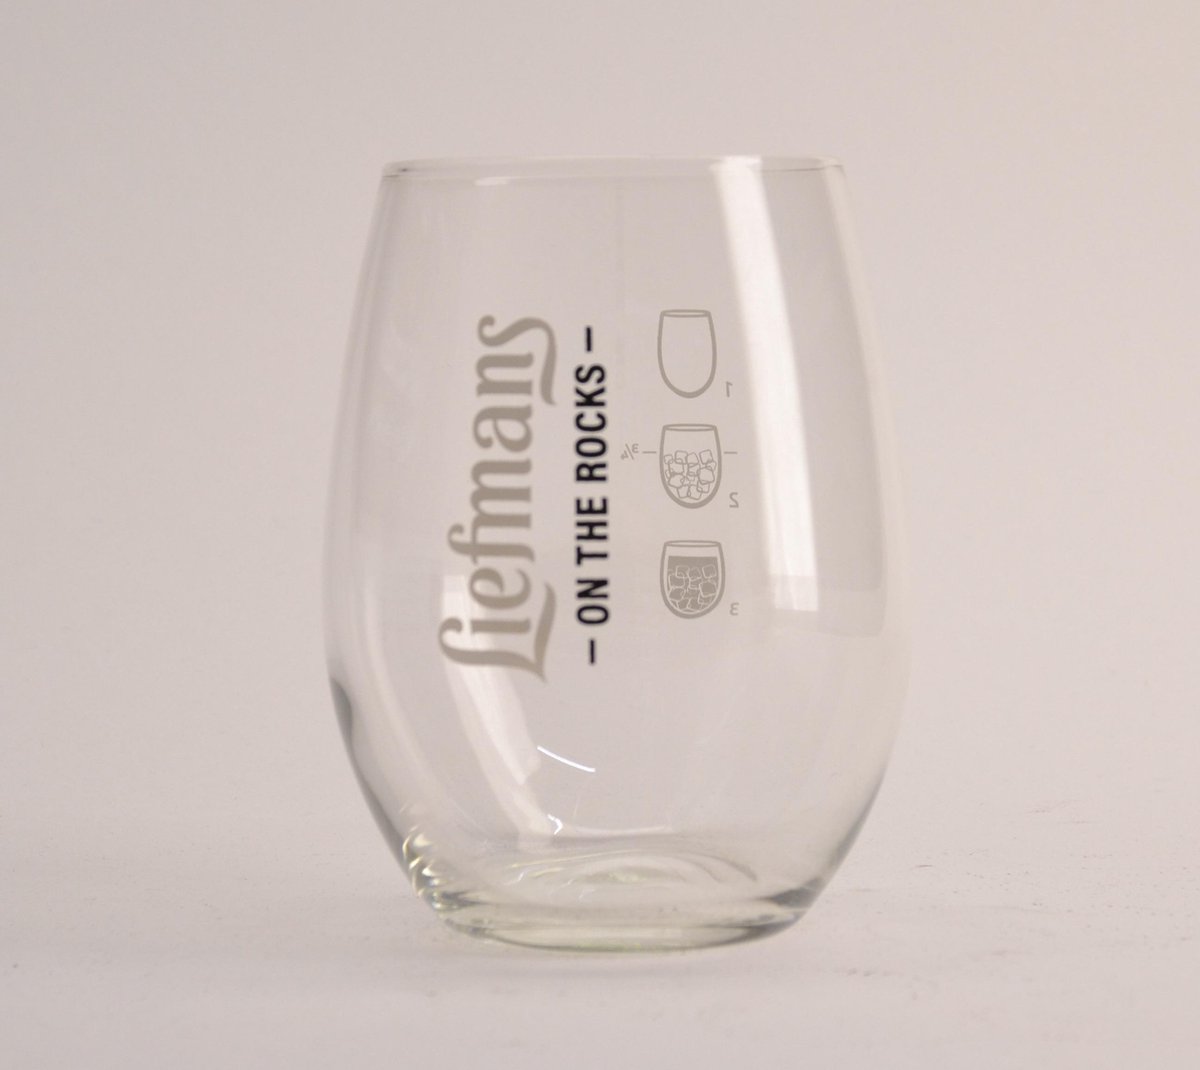 Liefmans On The Rocks Bierglas - 25cl - Origineel glas van de brouwerij - Nieuw - Liefmans